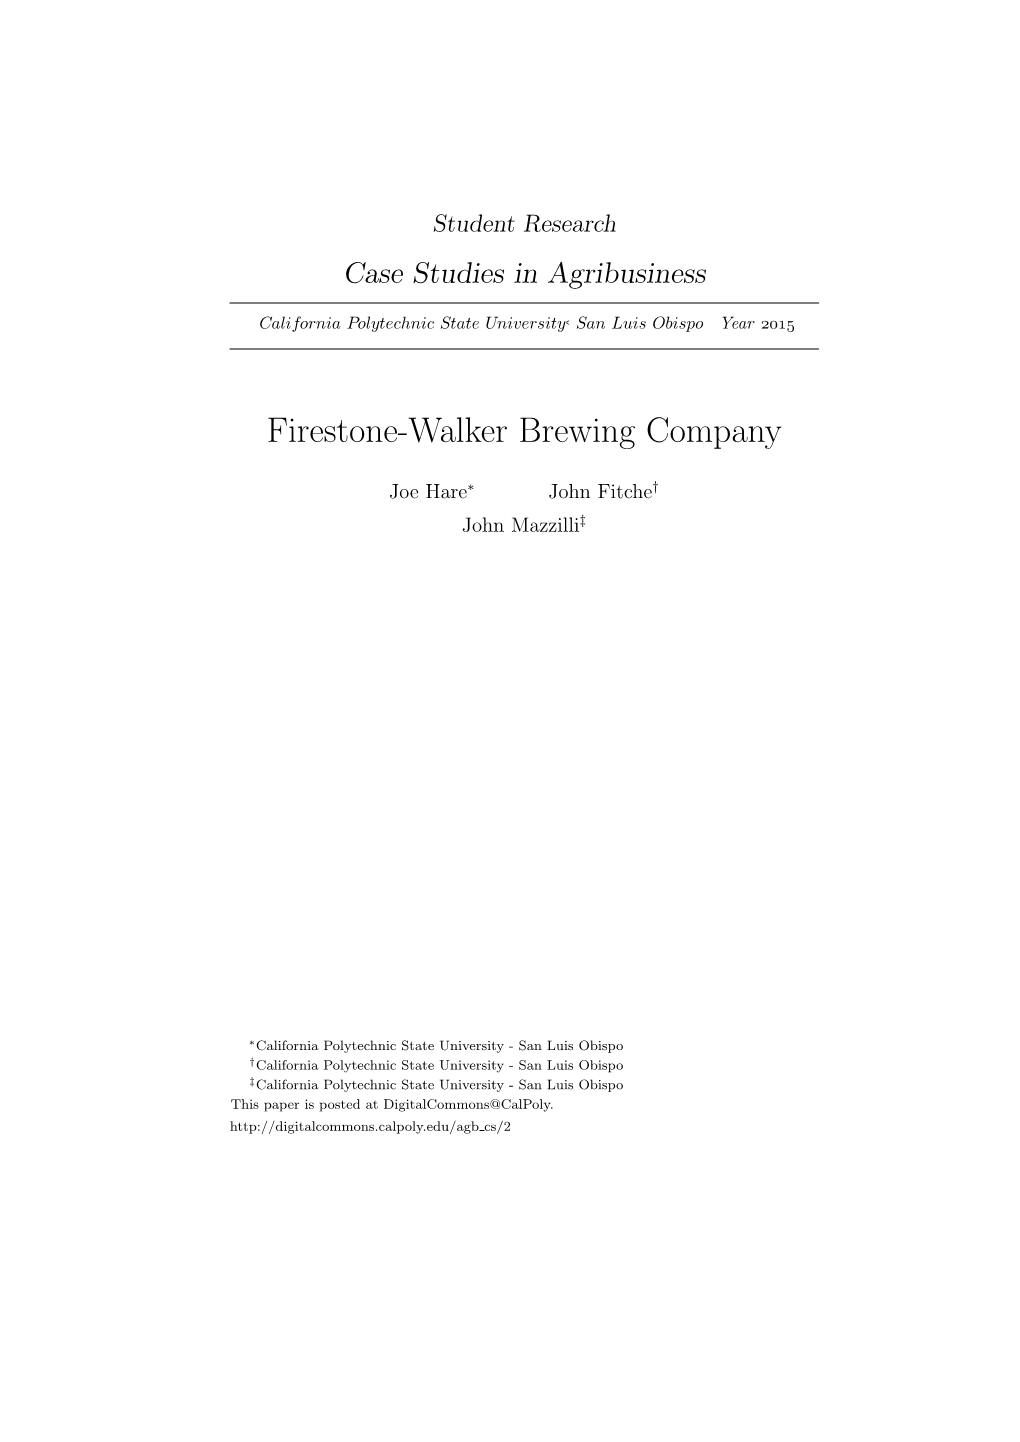 Firestone-Walker Brewing Company